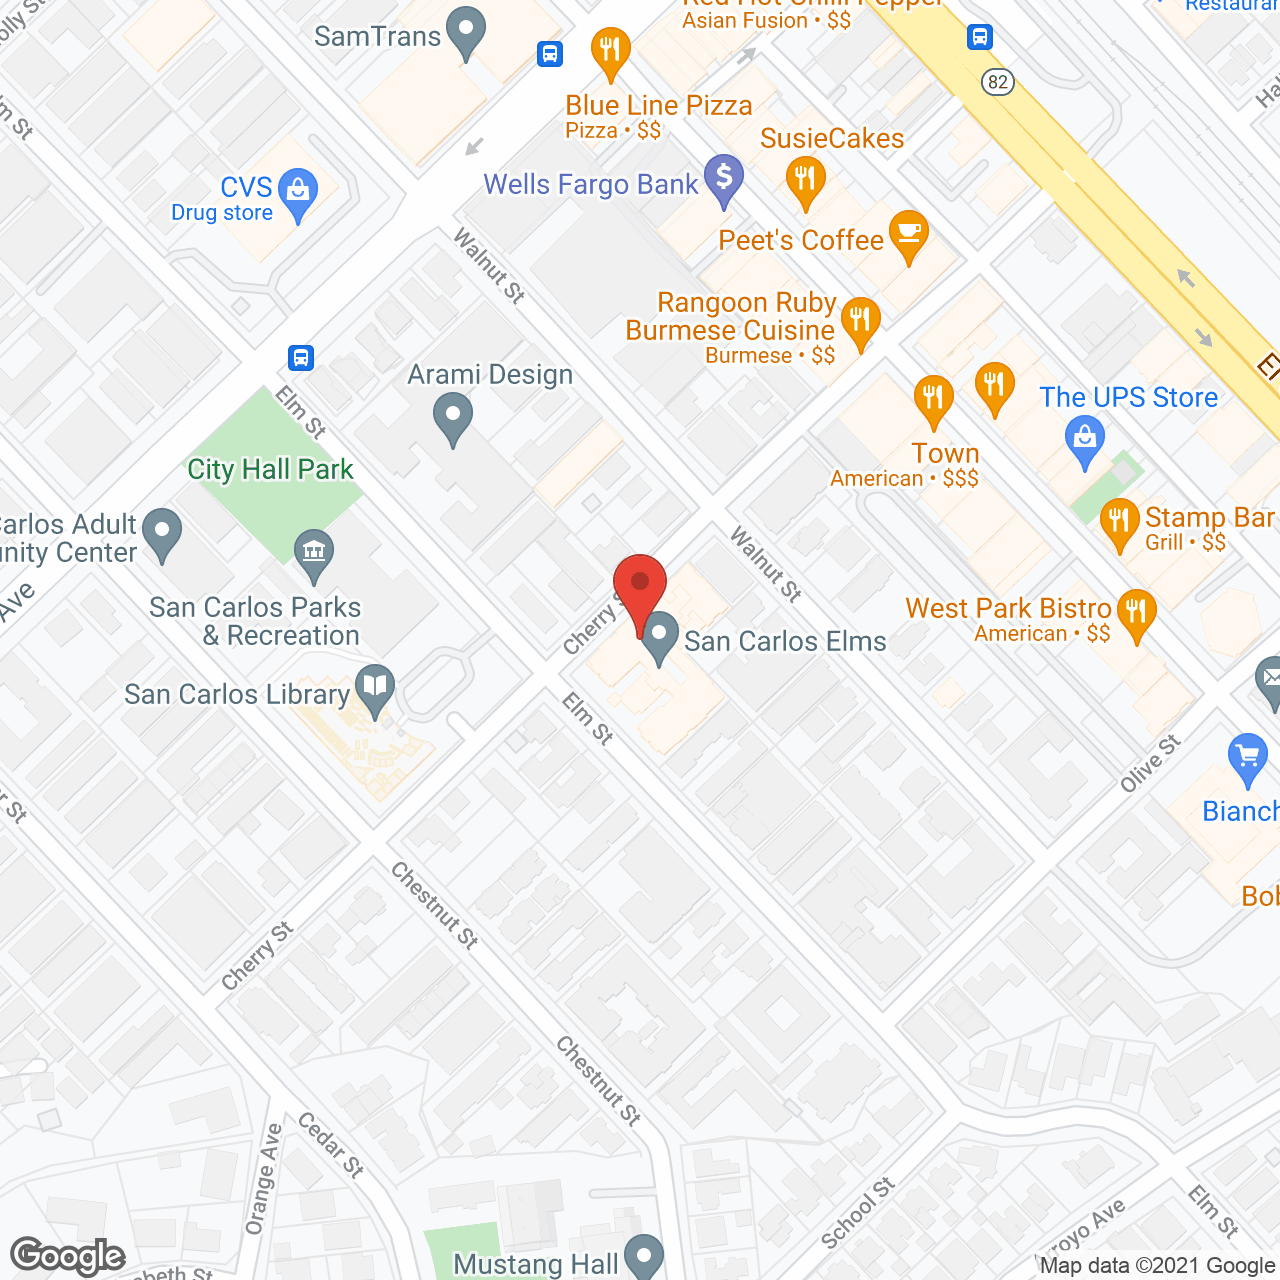 San Carlos Elms in google map